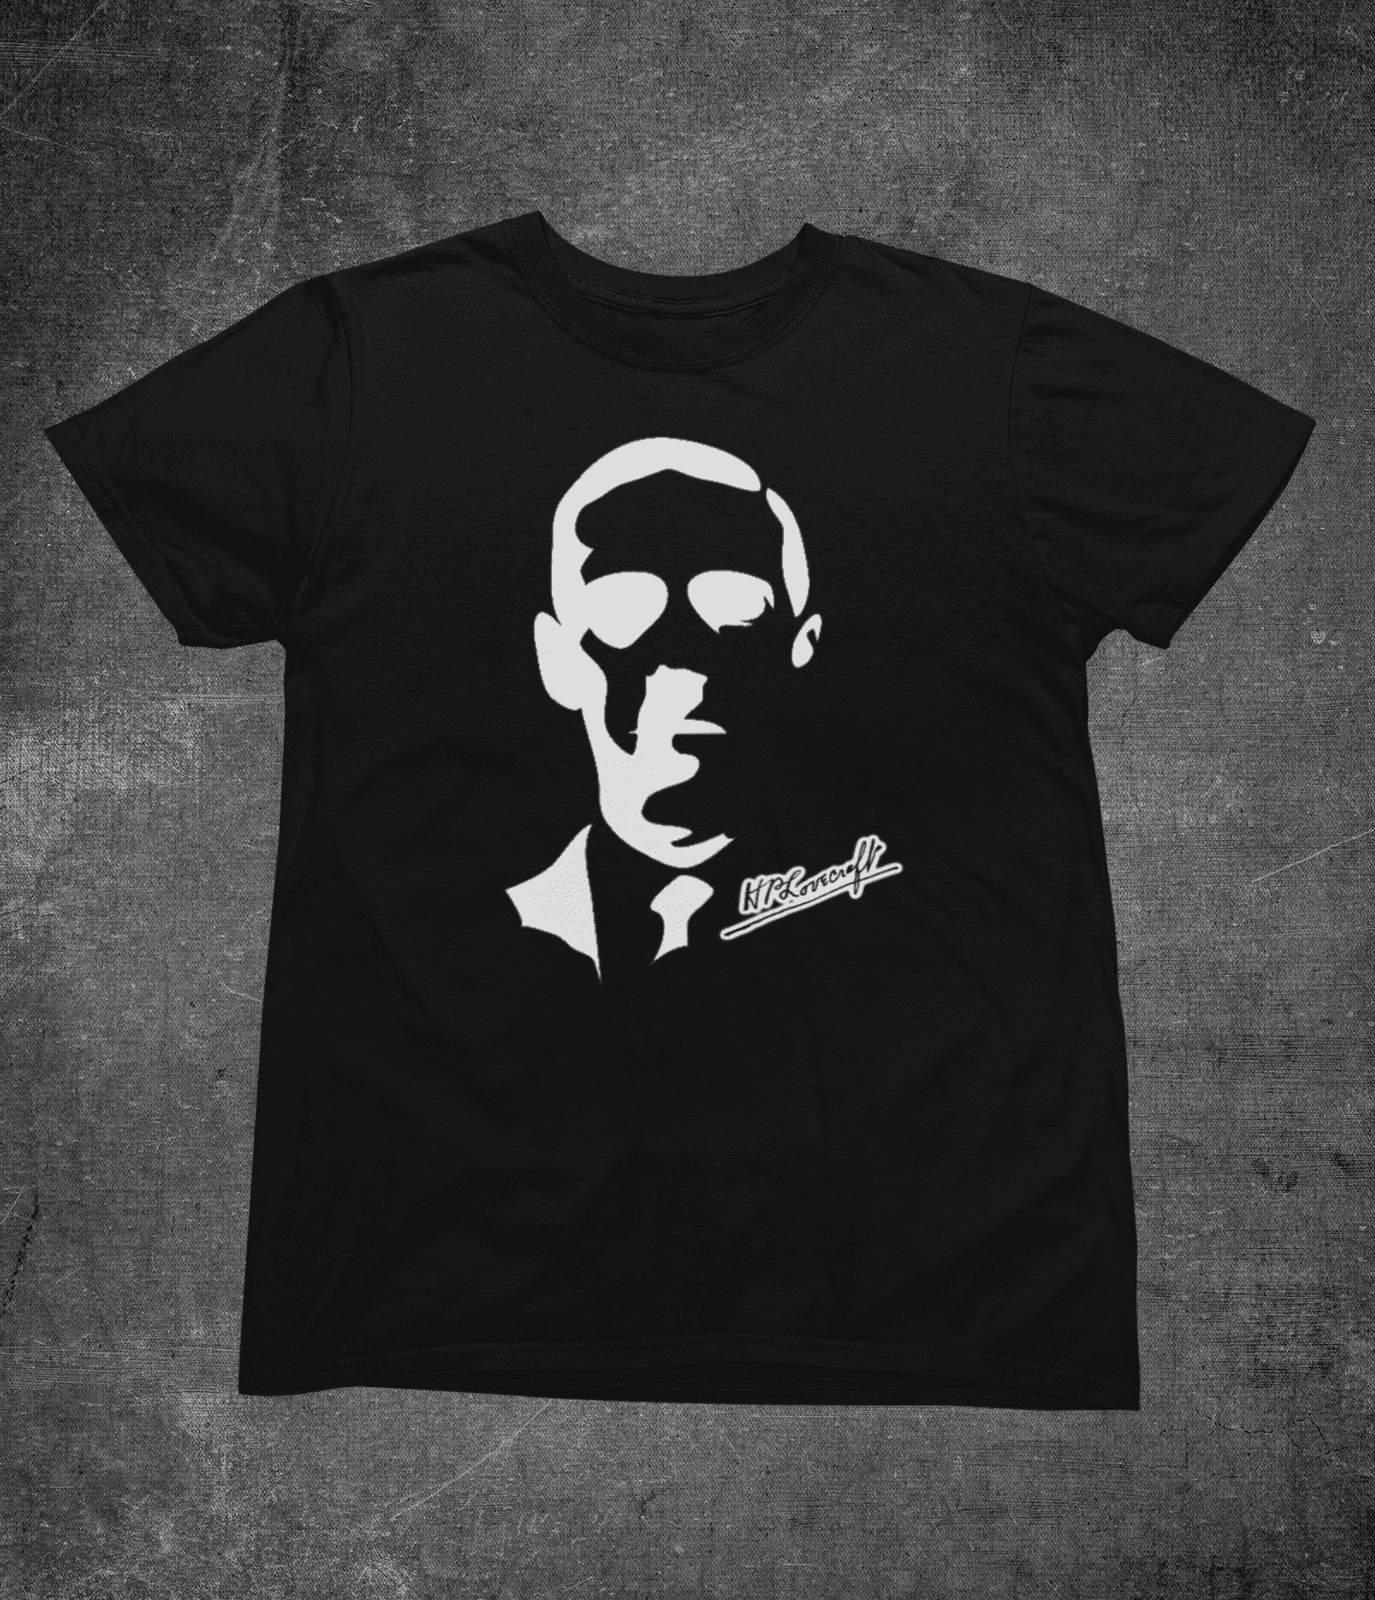 H. P Lovecraft Signature - Unisex T-shirt